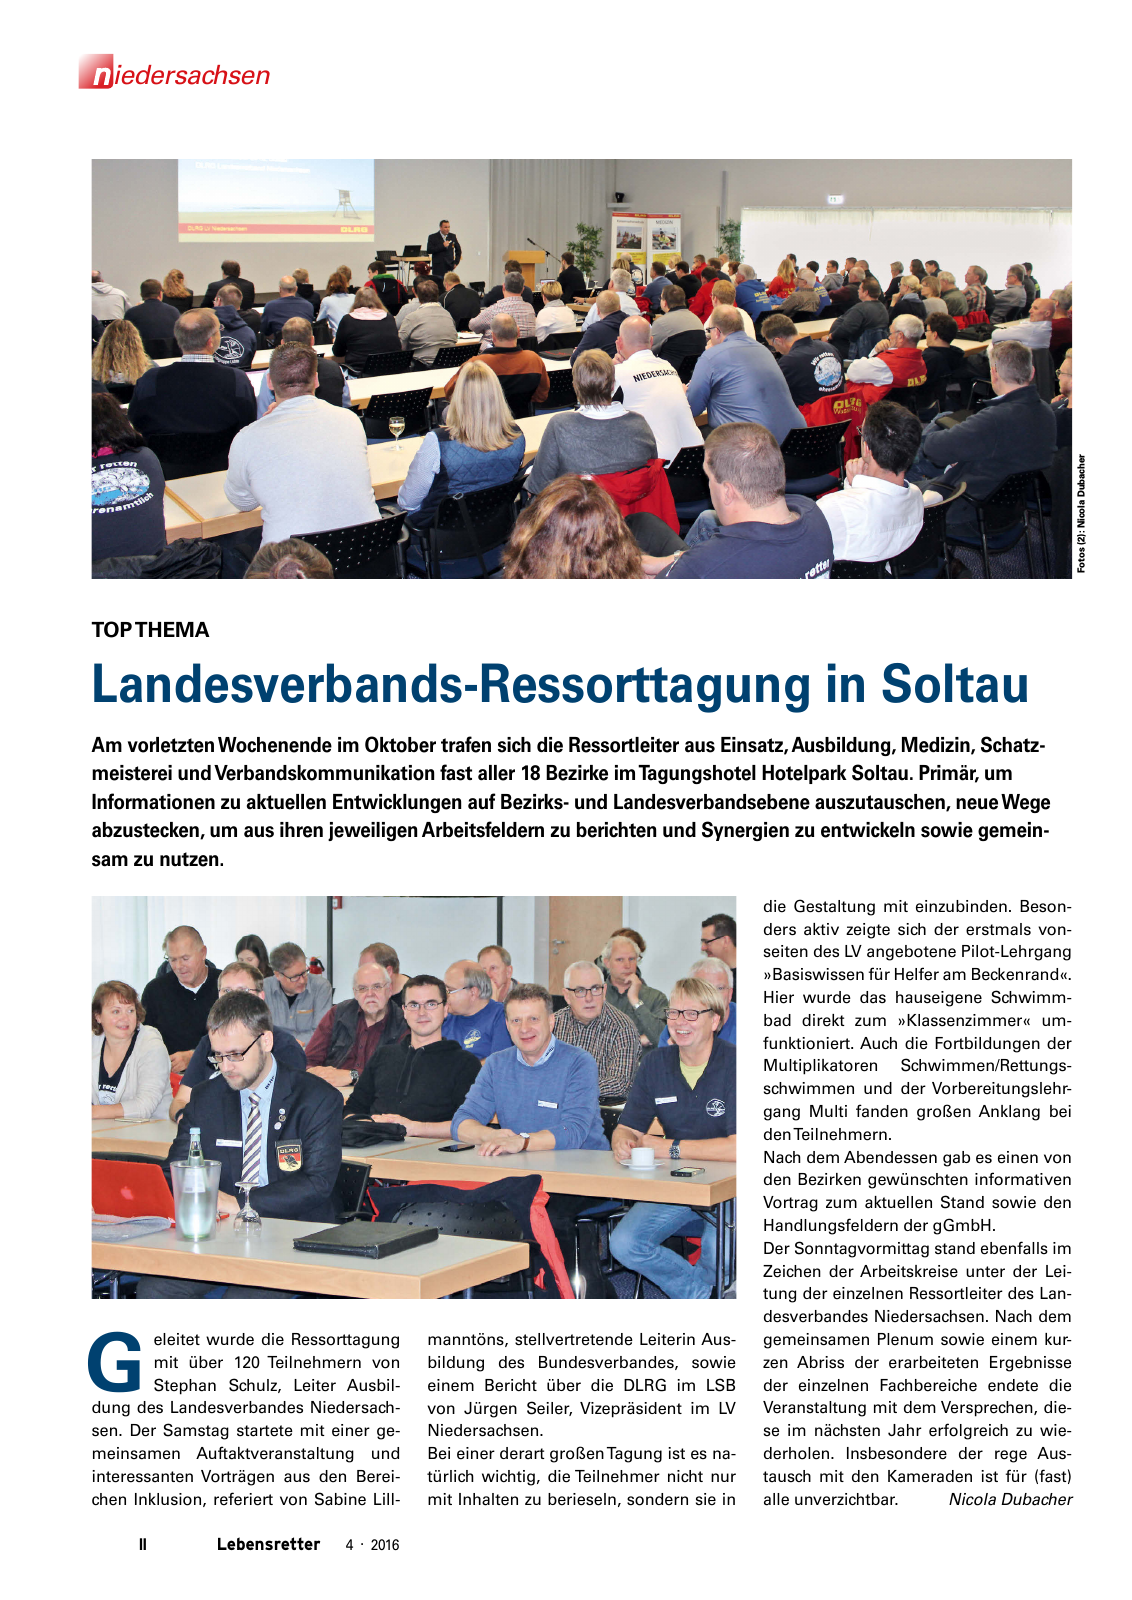 Vorschau Lebensretter 4/2016 - Regionalausgabe Niedersachsen Seite 4